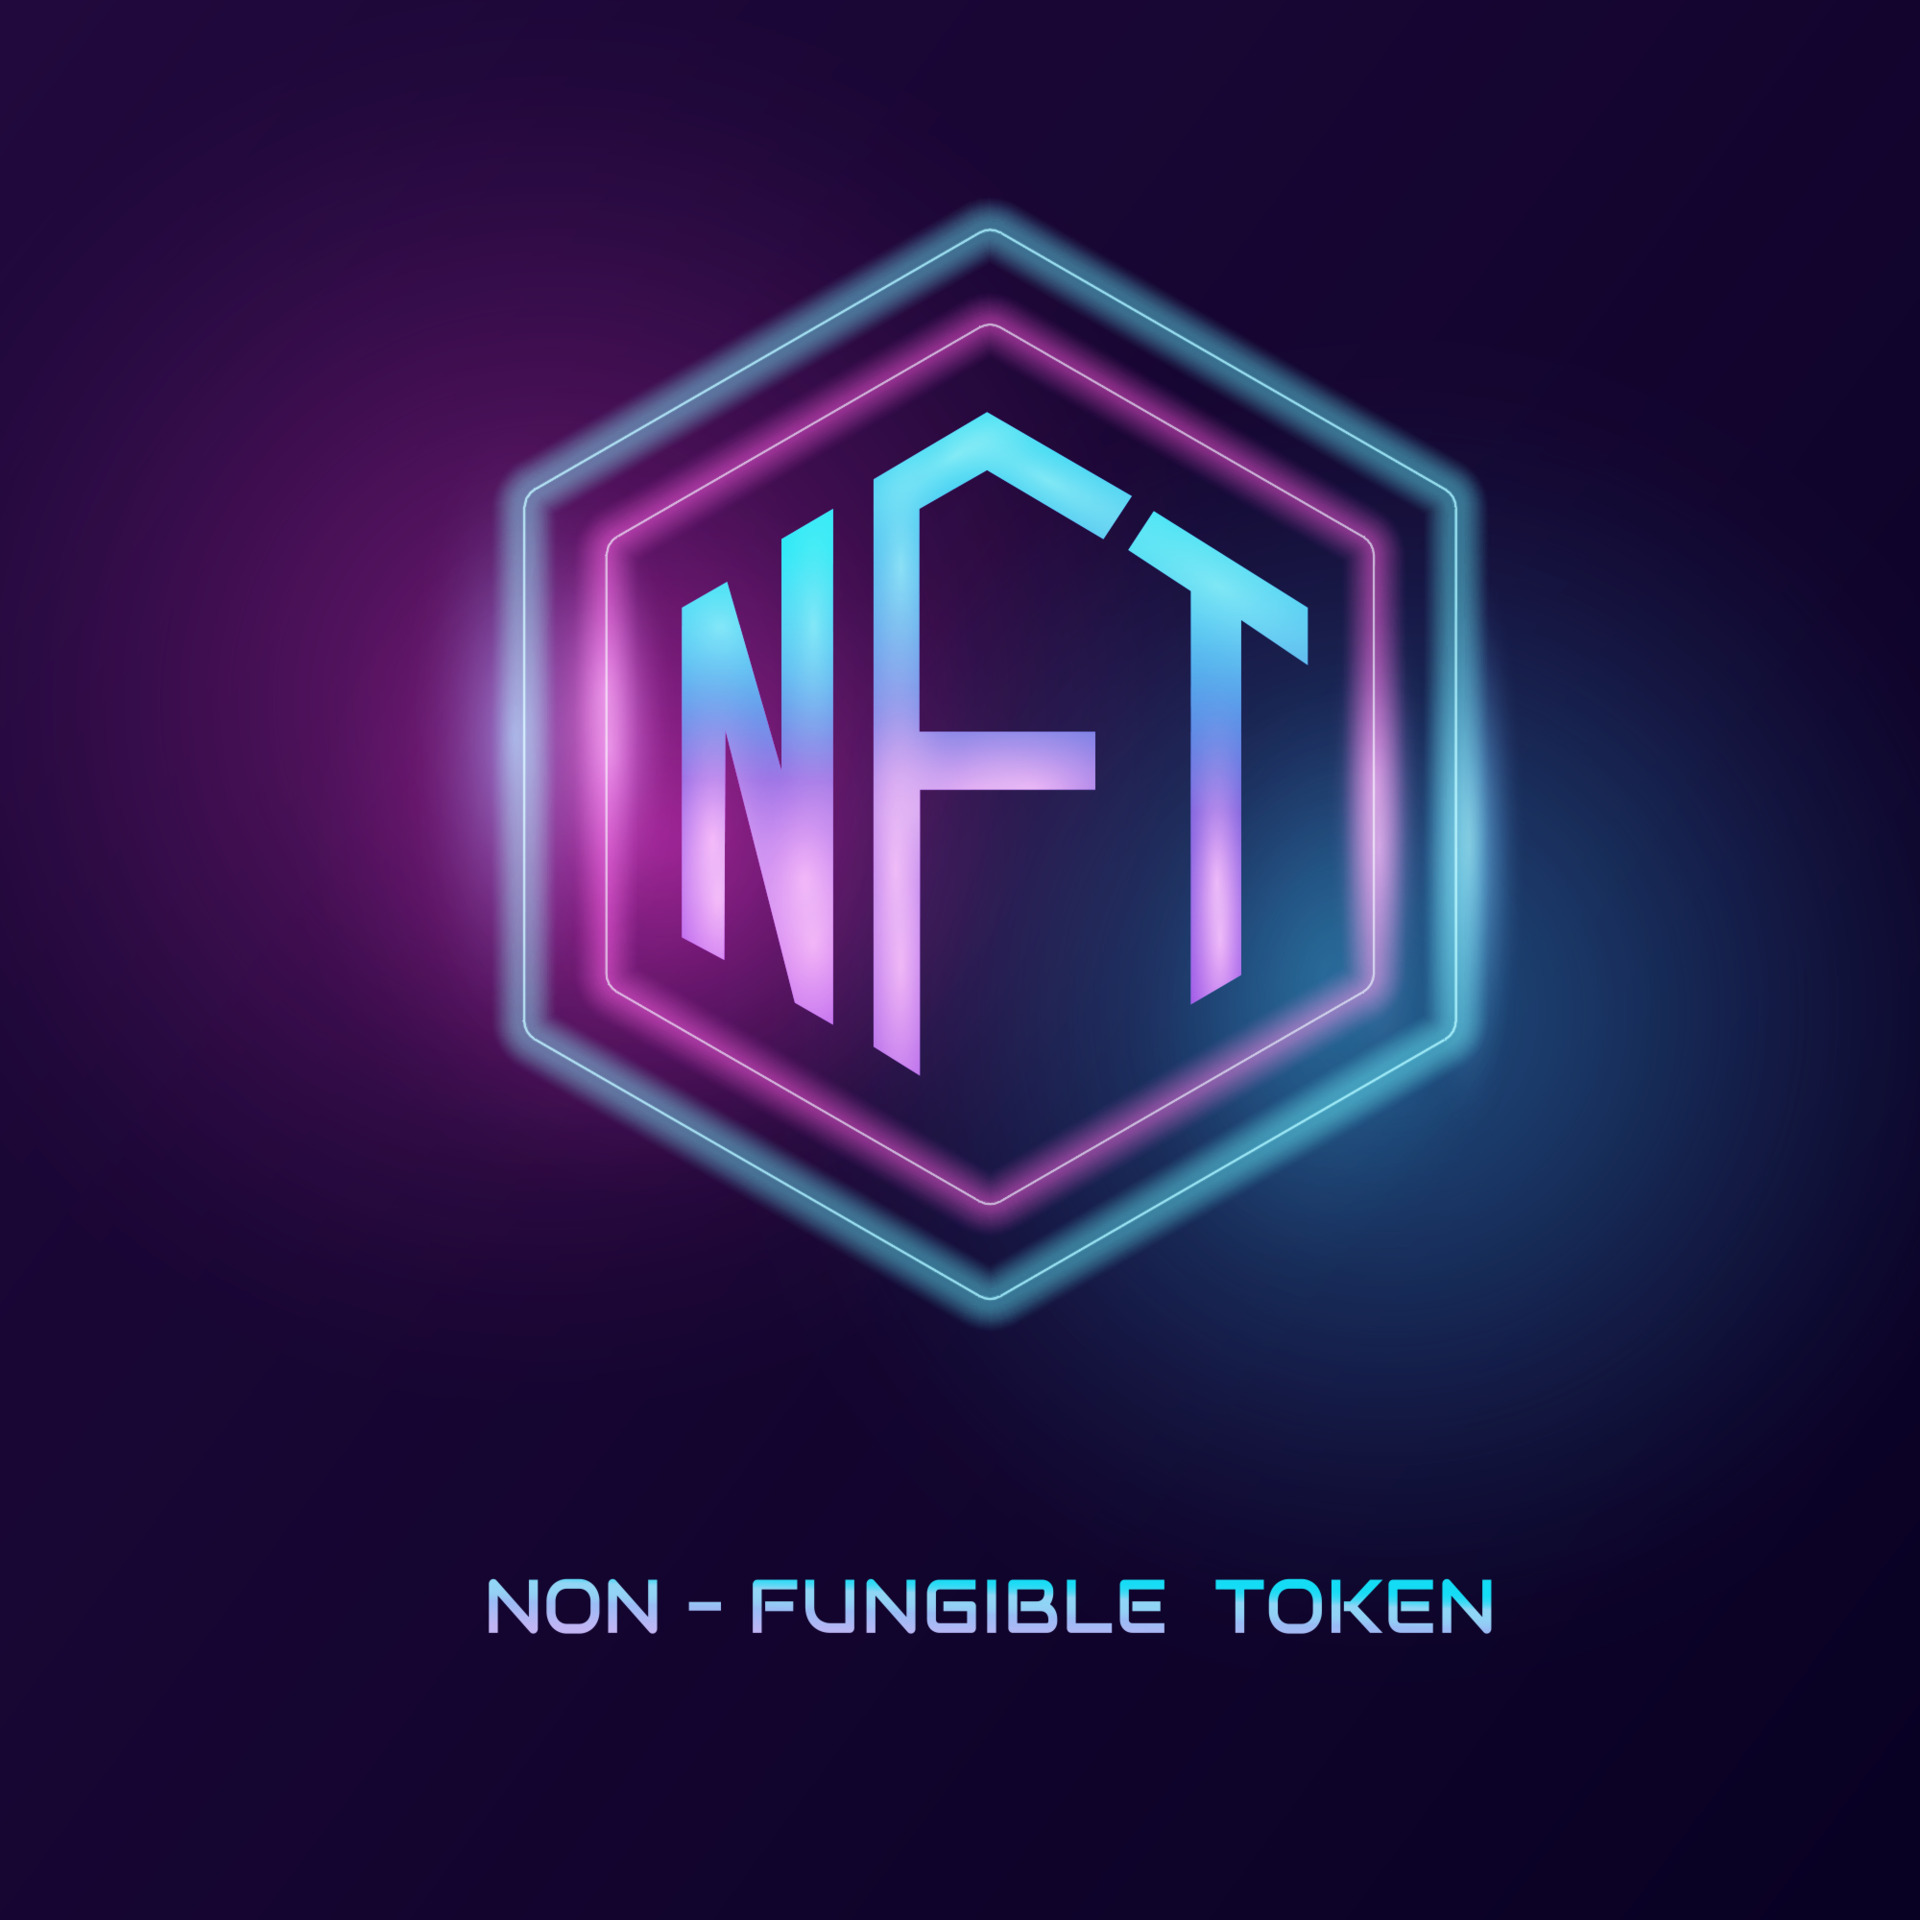 non-fungible token or NFT